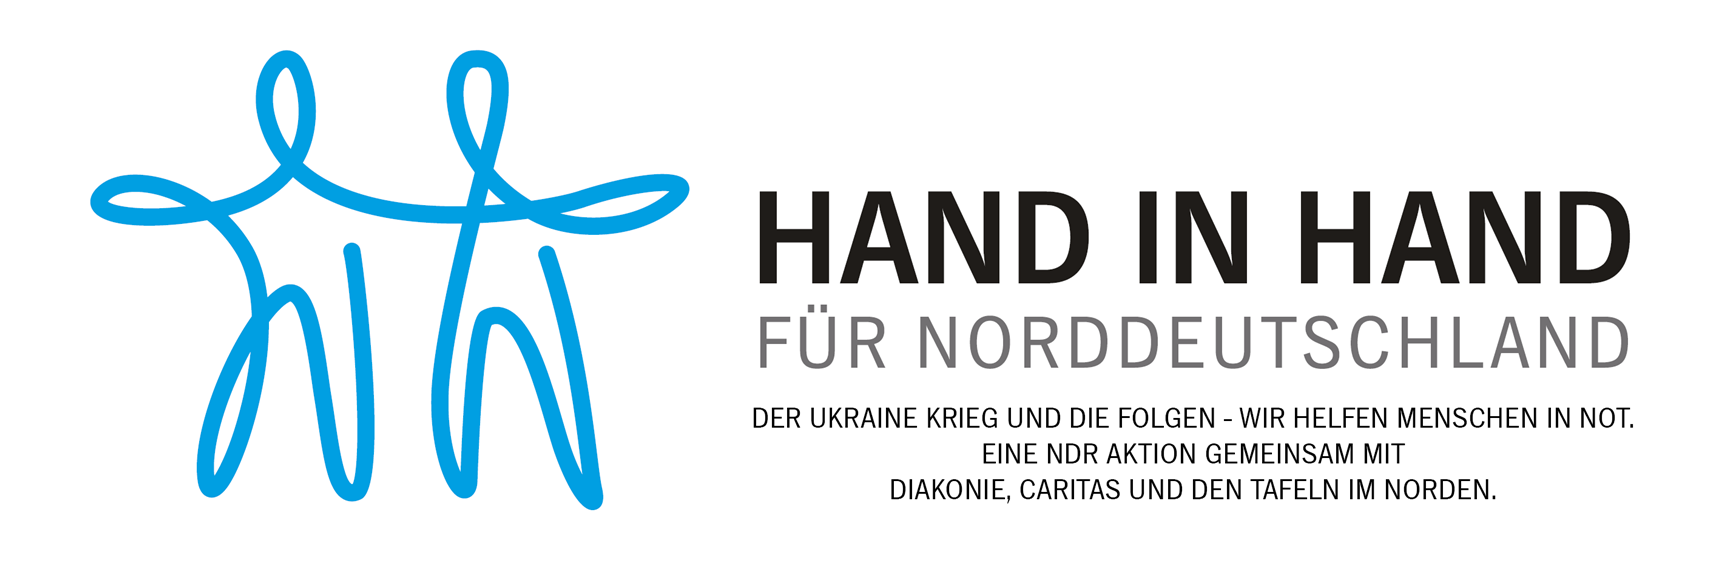 Hand in Hand für Norddeutschland_Header